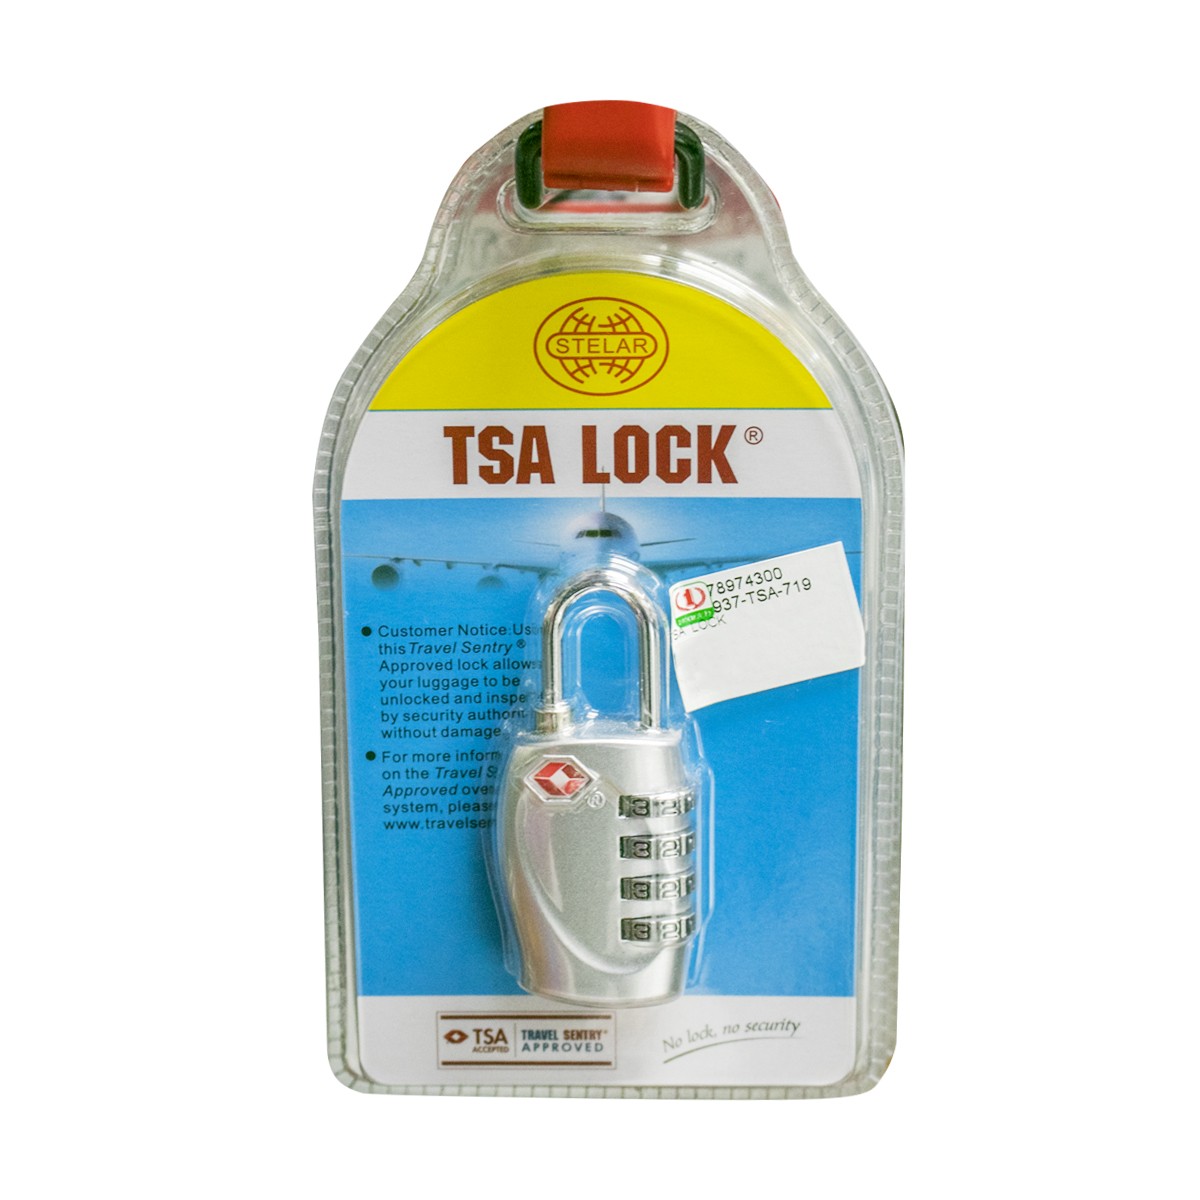 Stellar TSA Lock TSA-719